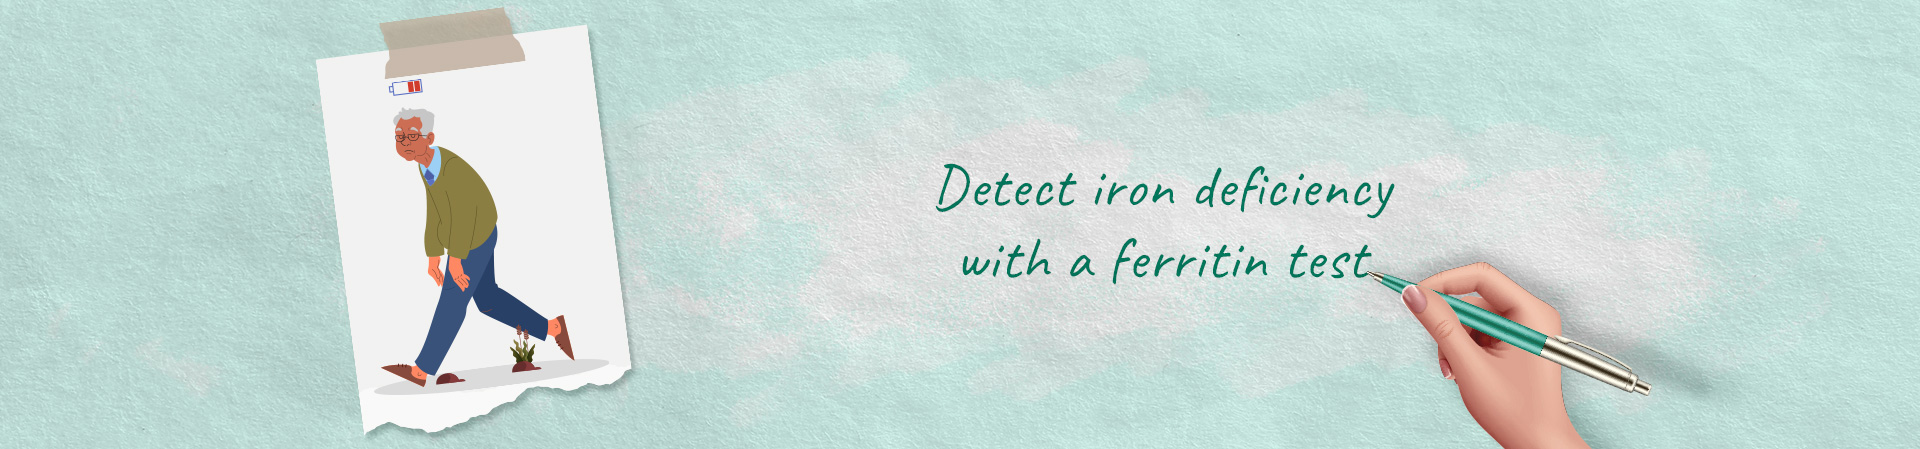 Ferritin test benefits